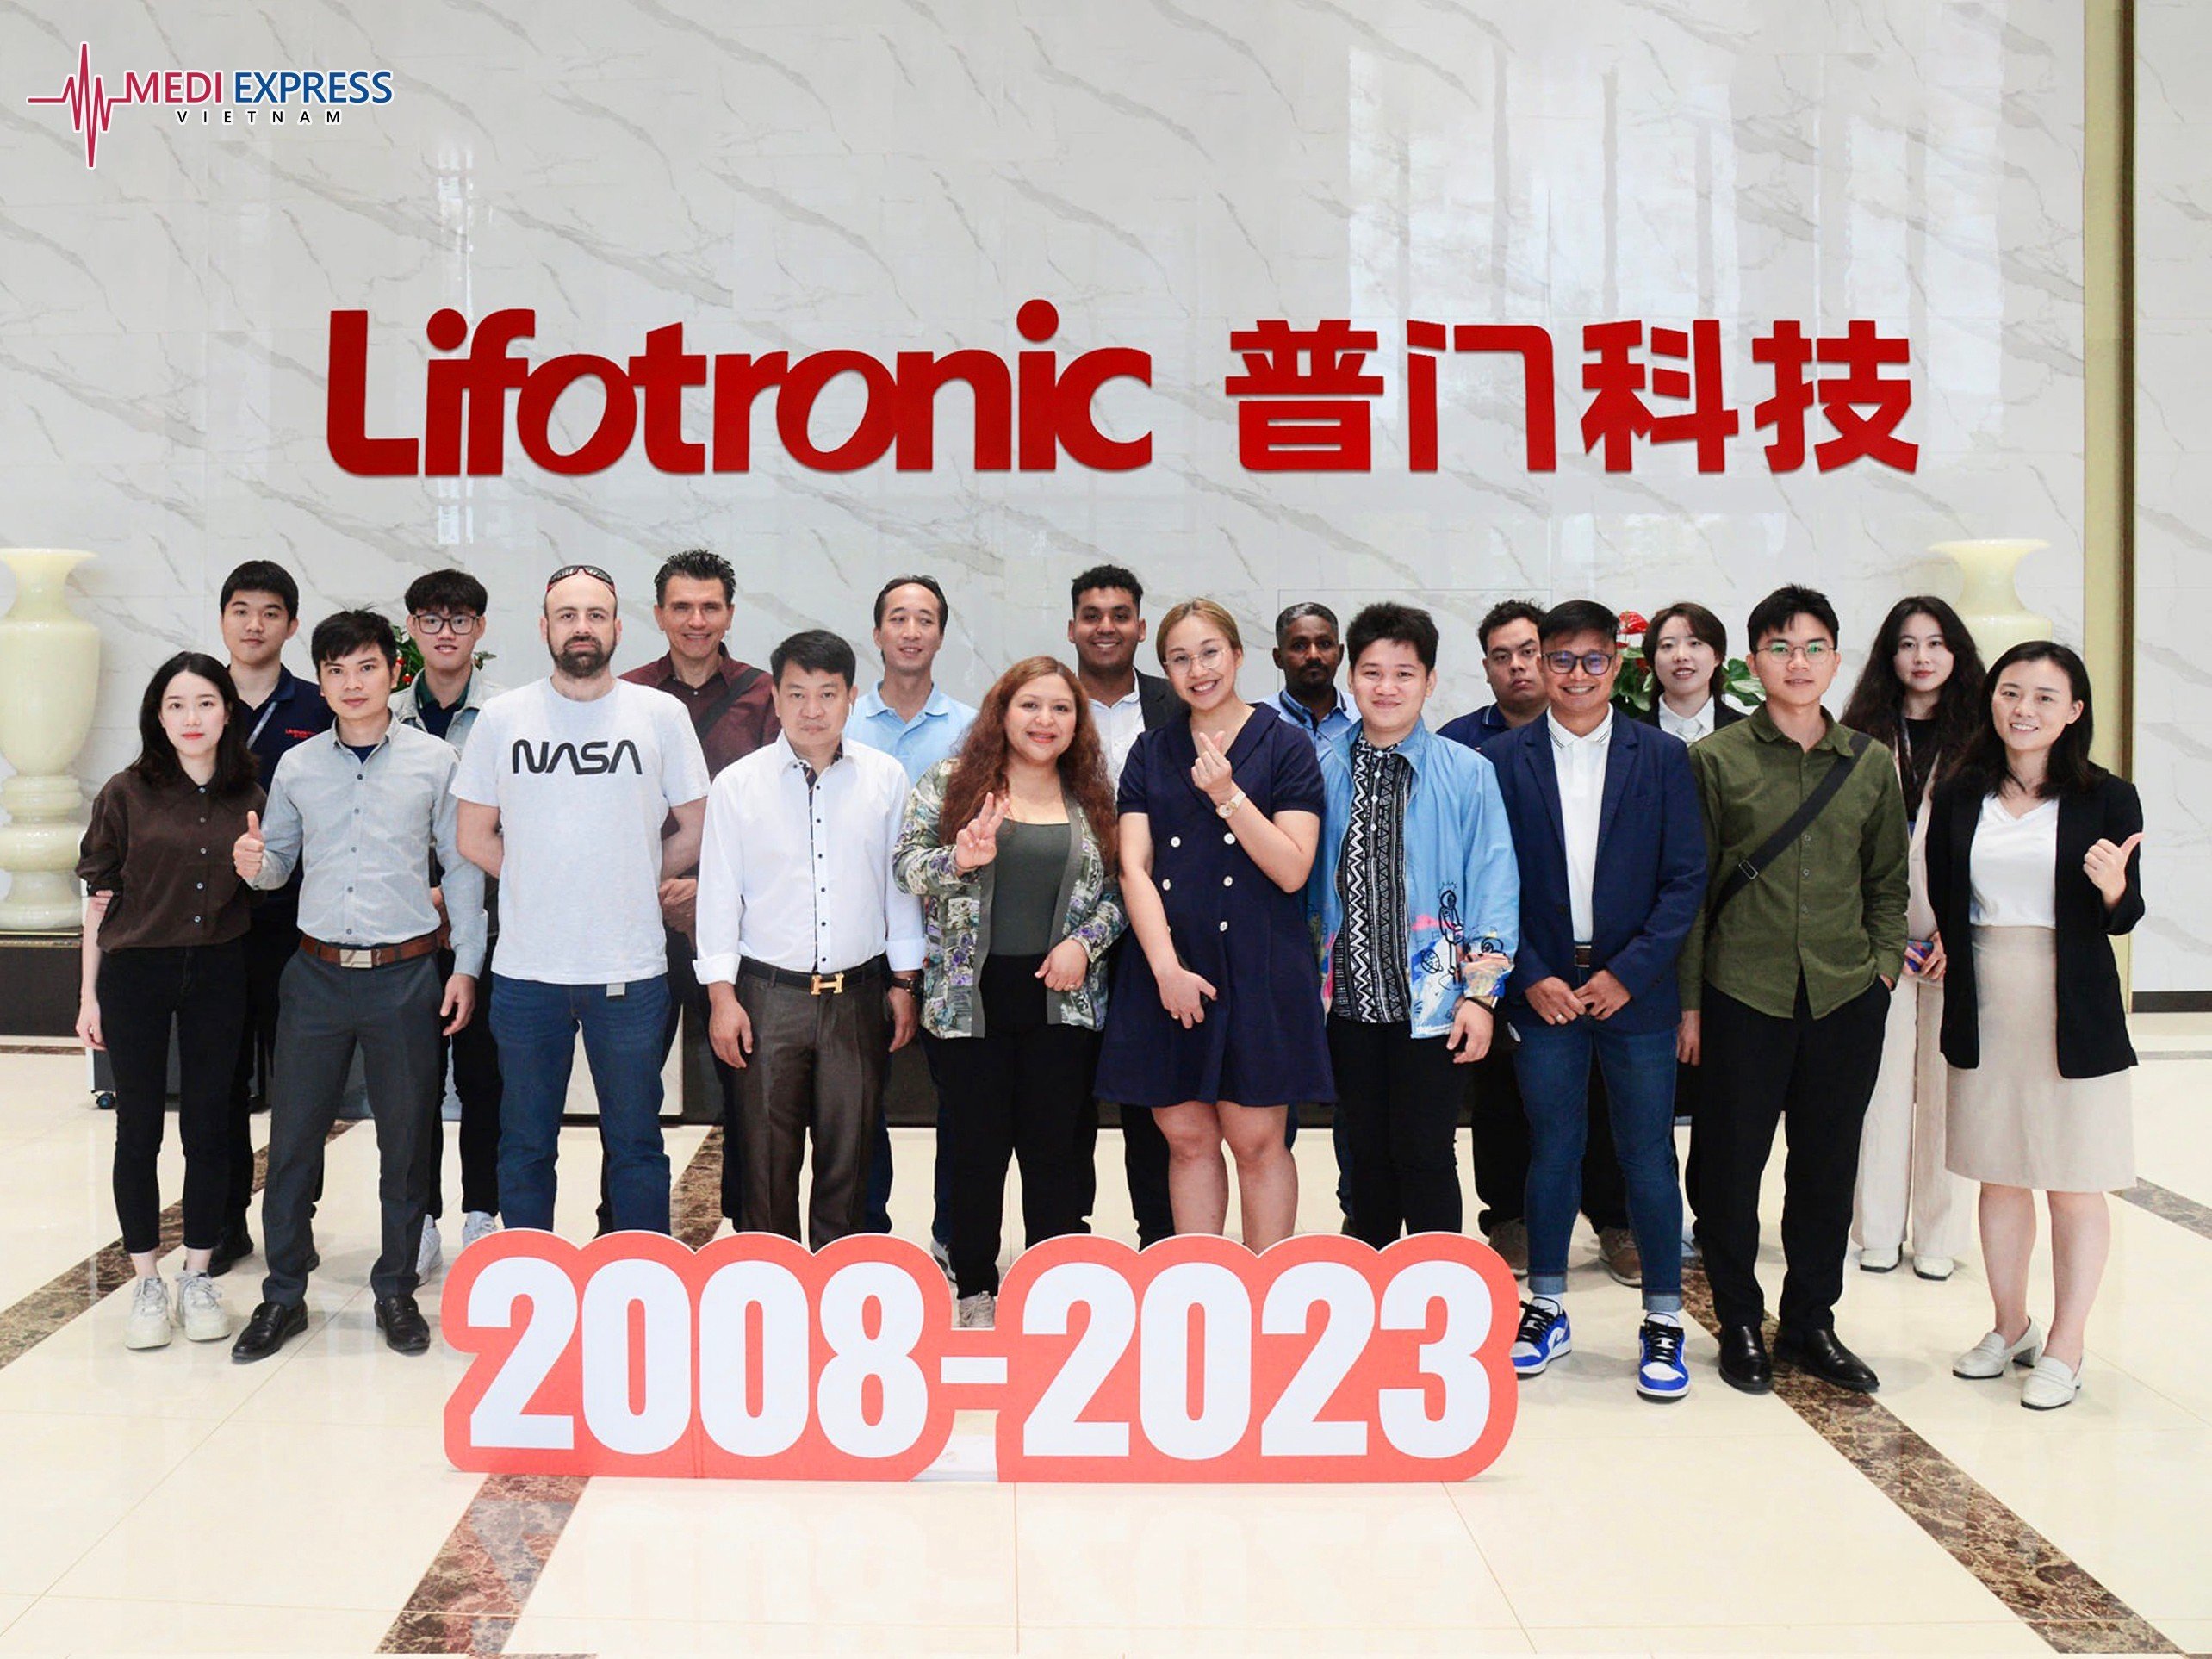 Mediexpress tham gia khóa đào tạo kỹ sư hãng Lifotronic tại Trung Quốc